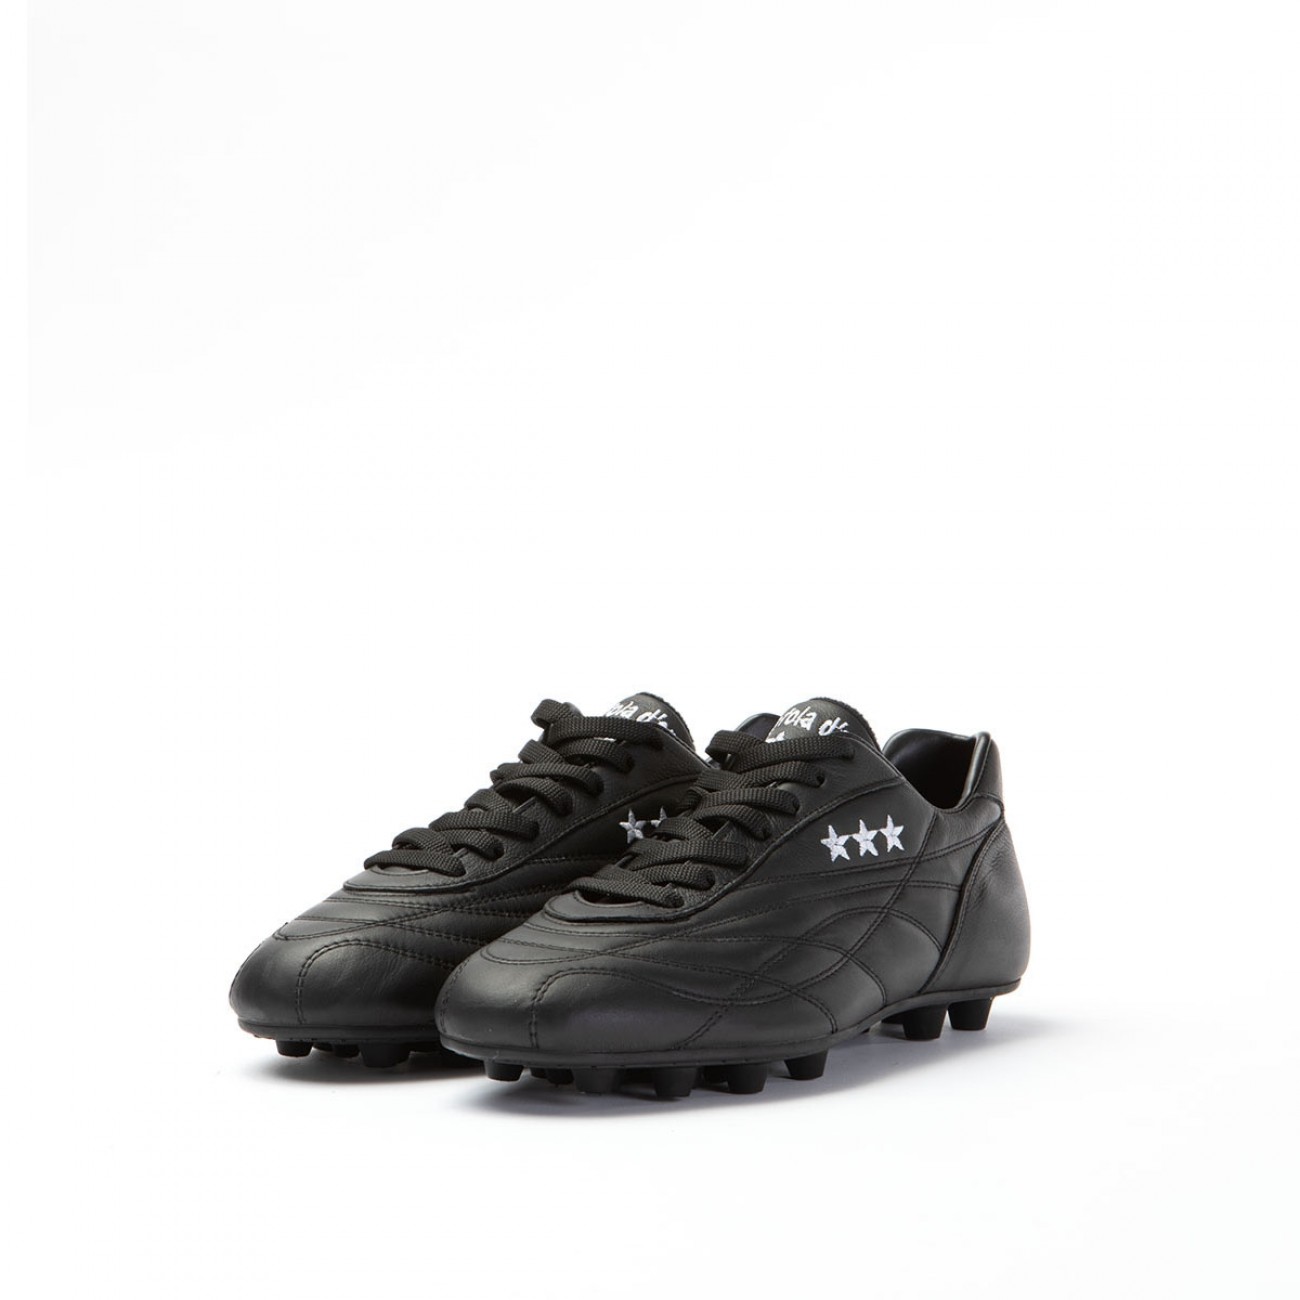 retro soccer boots